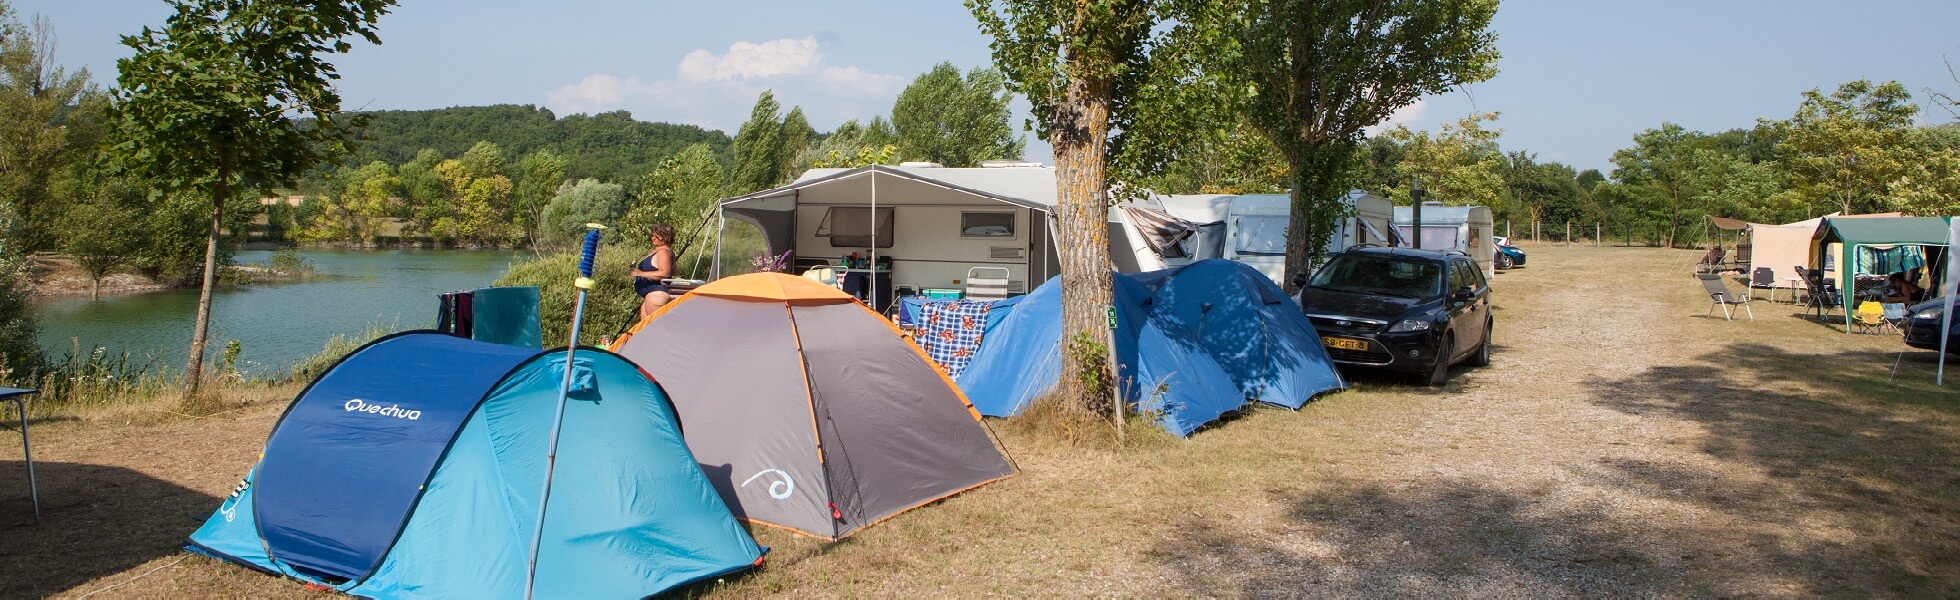 De online campinggids voor Frankrijk!